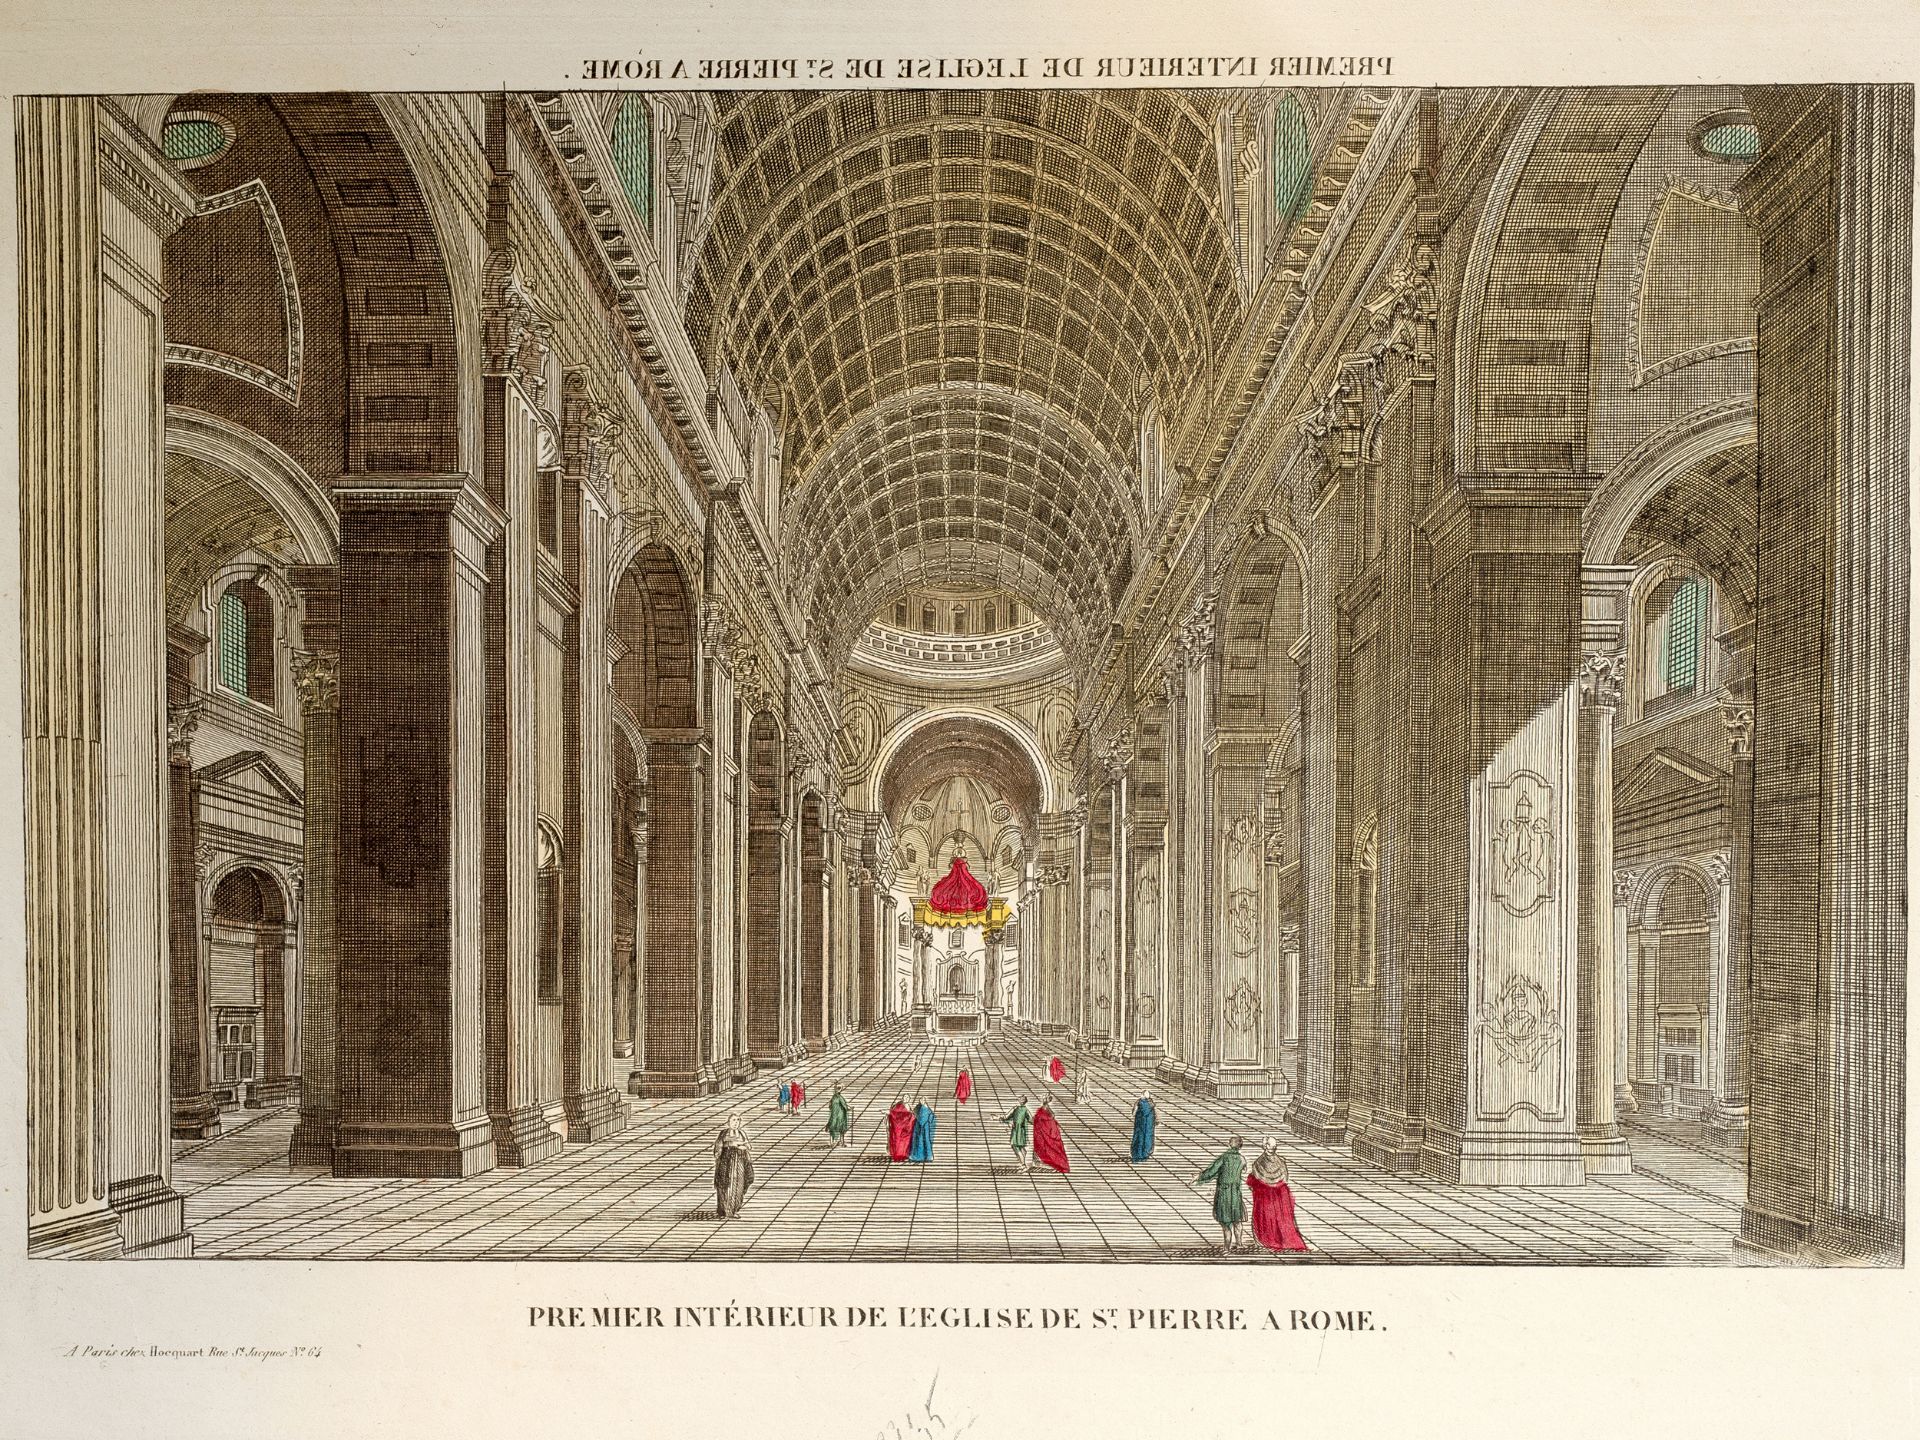 „Premier intérieur de l’eglise de S. Pierre a Rome“